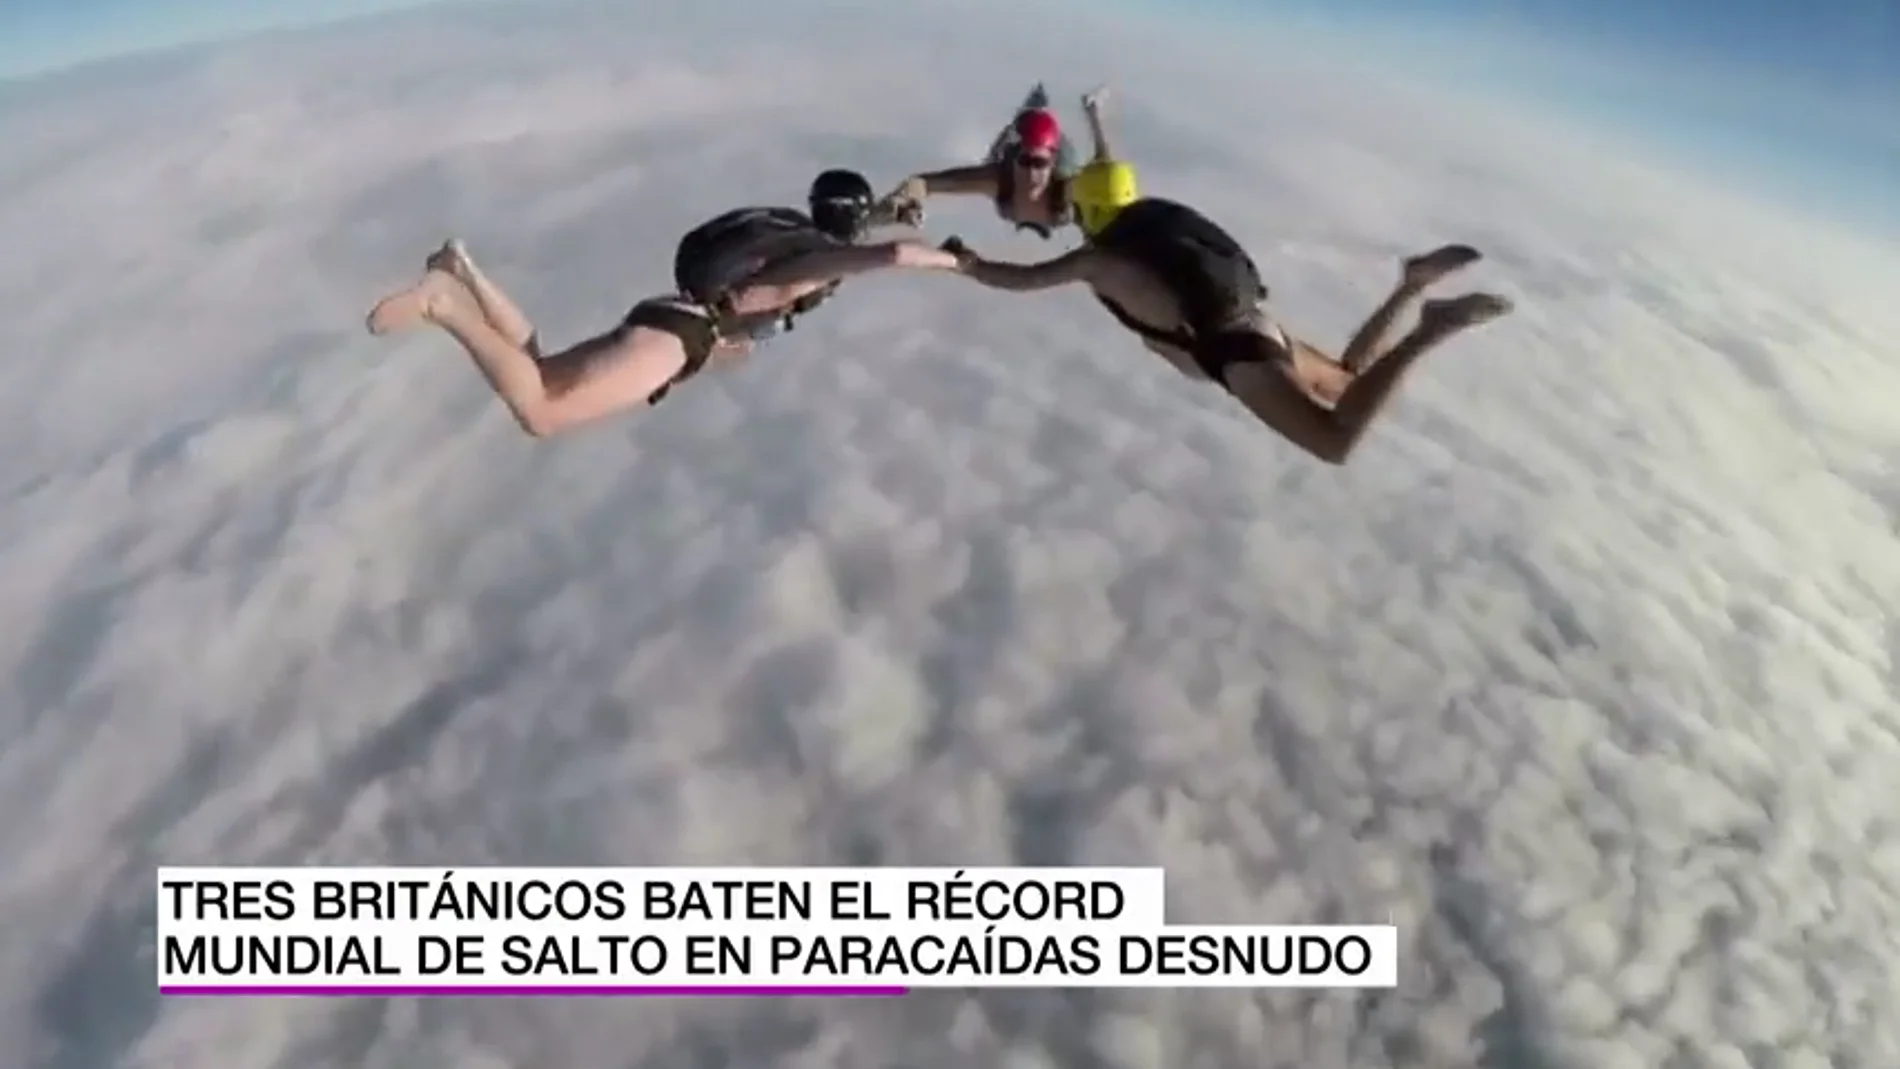 Tres británicos logran el récord mundial de salto en paracaídas desnudos desde una altura de casi 7.000 metros